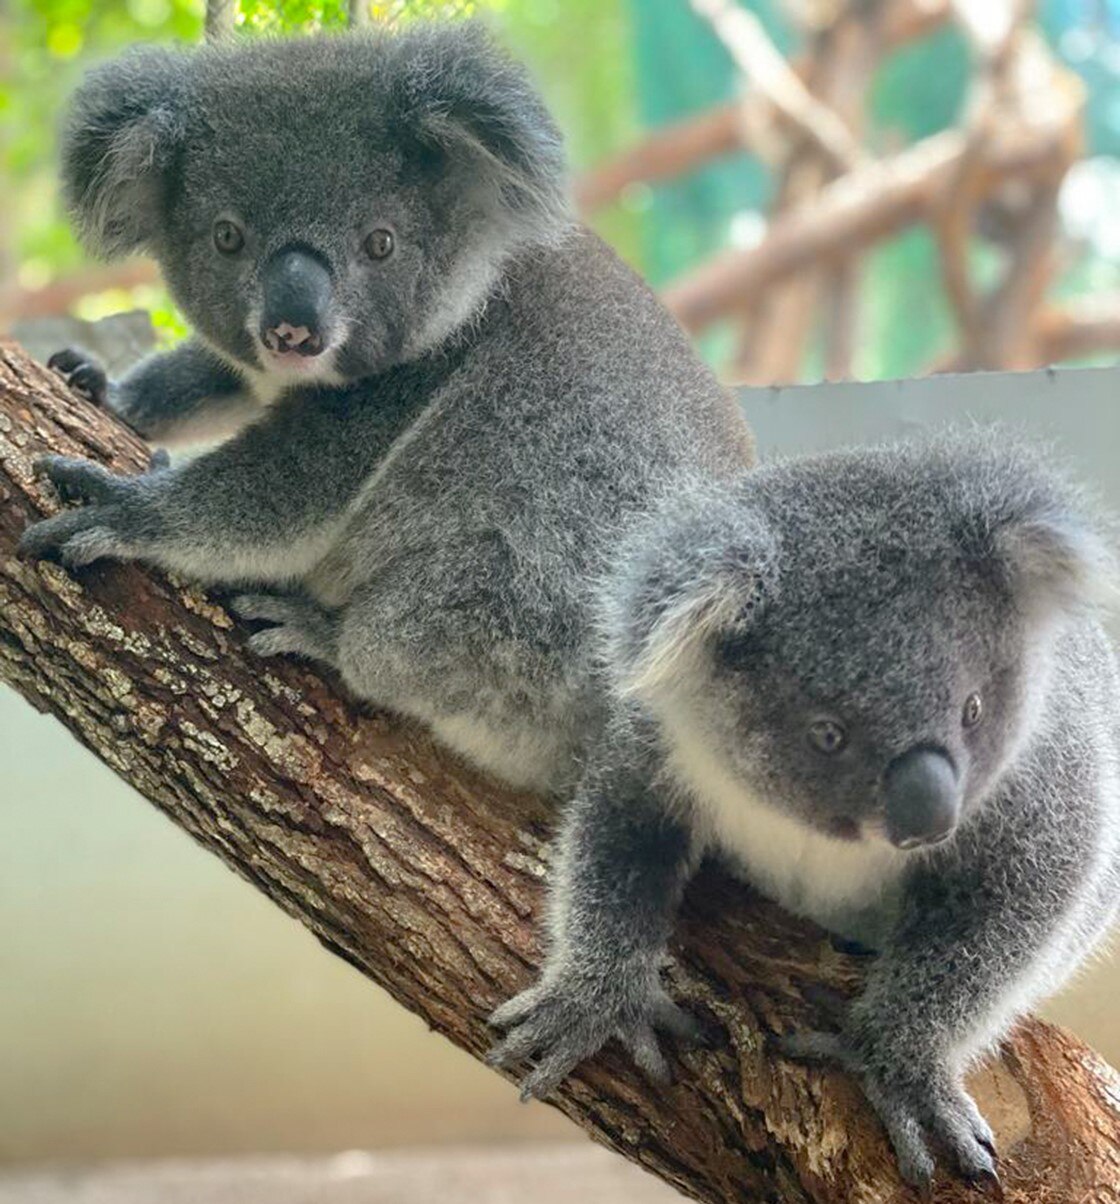 Two juvenille koalas sit in a tree branch surrounding by leaves in a koala kindergarten